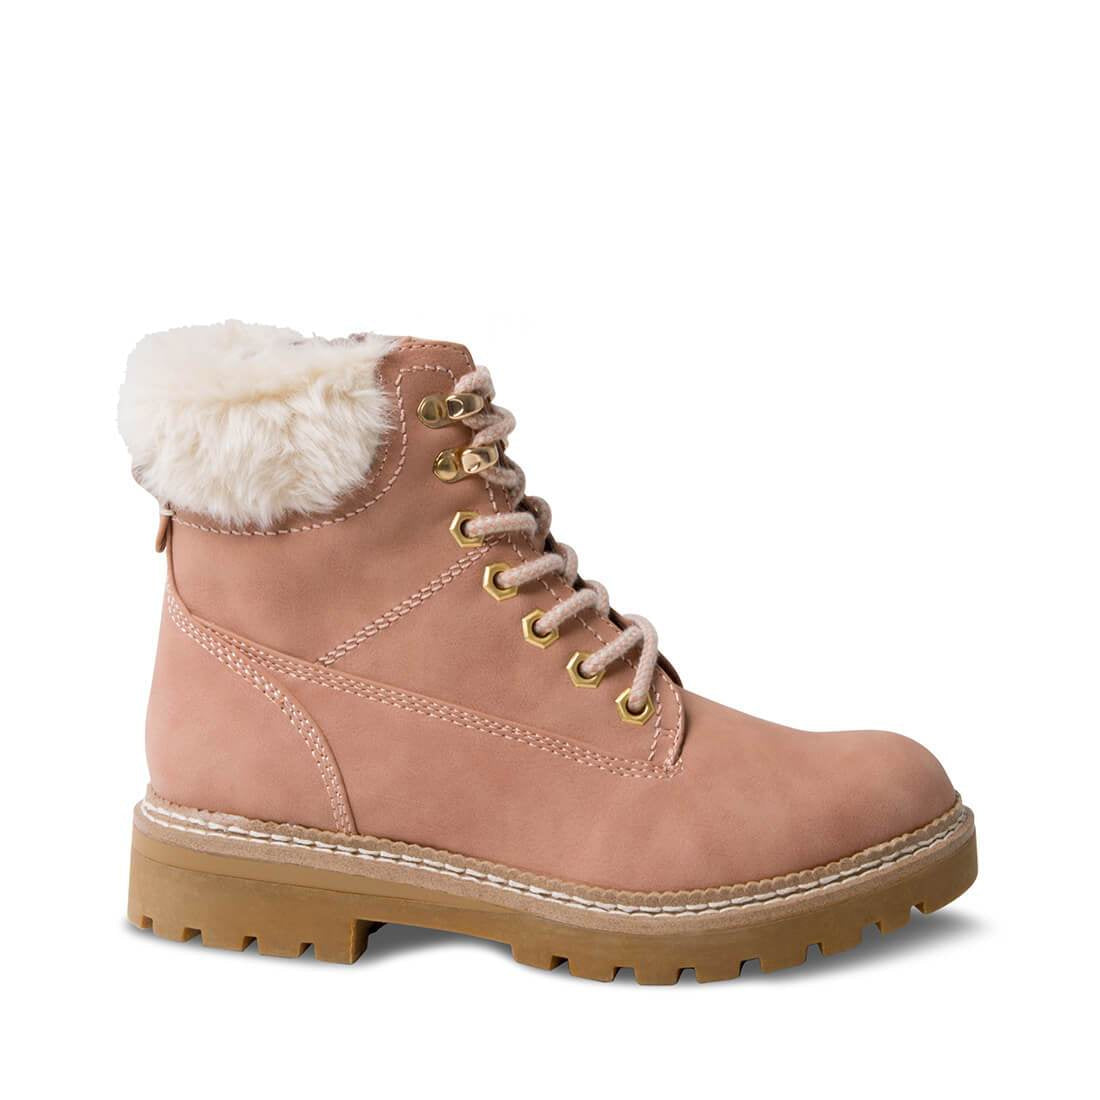 pink steve madden boots